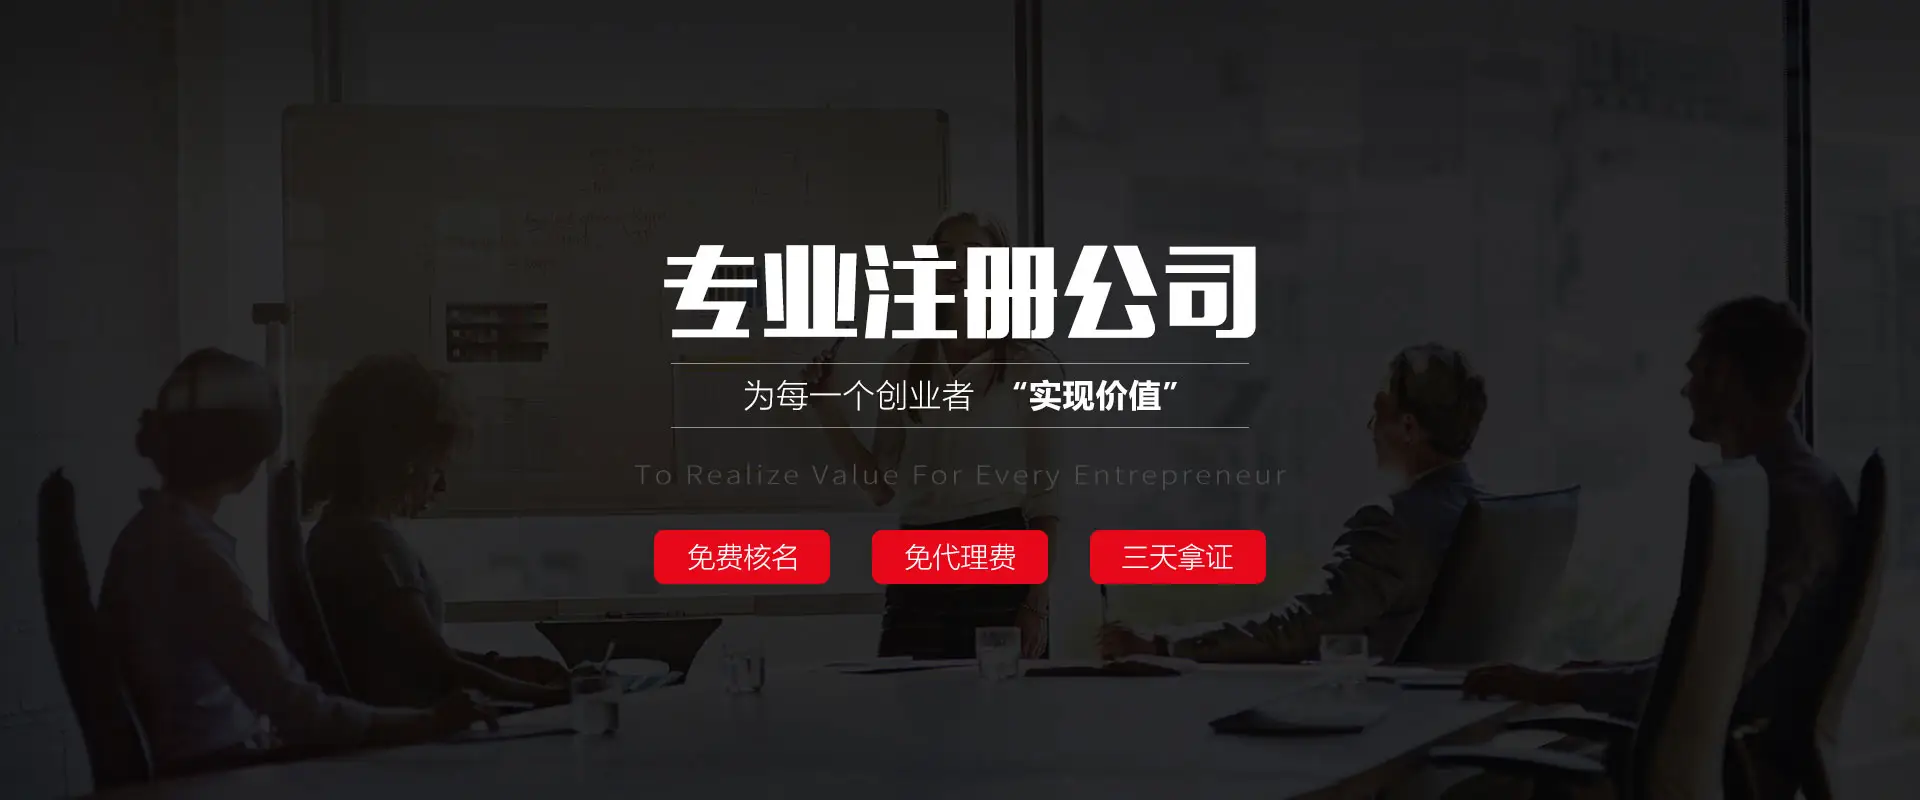 “广州注册香港公司”创业者在注册公司时首先要看这些问题。你清楚了吗？